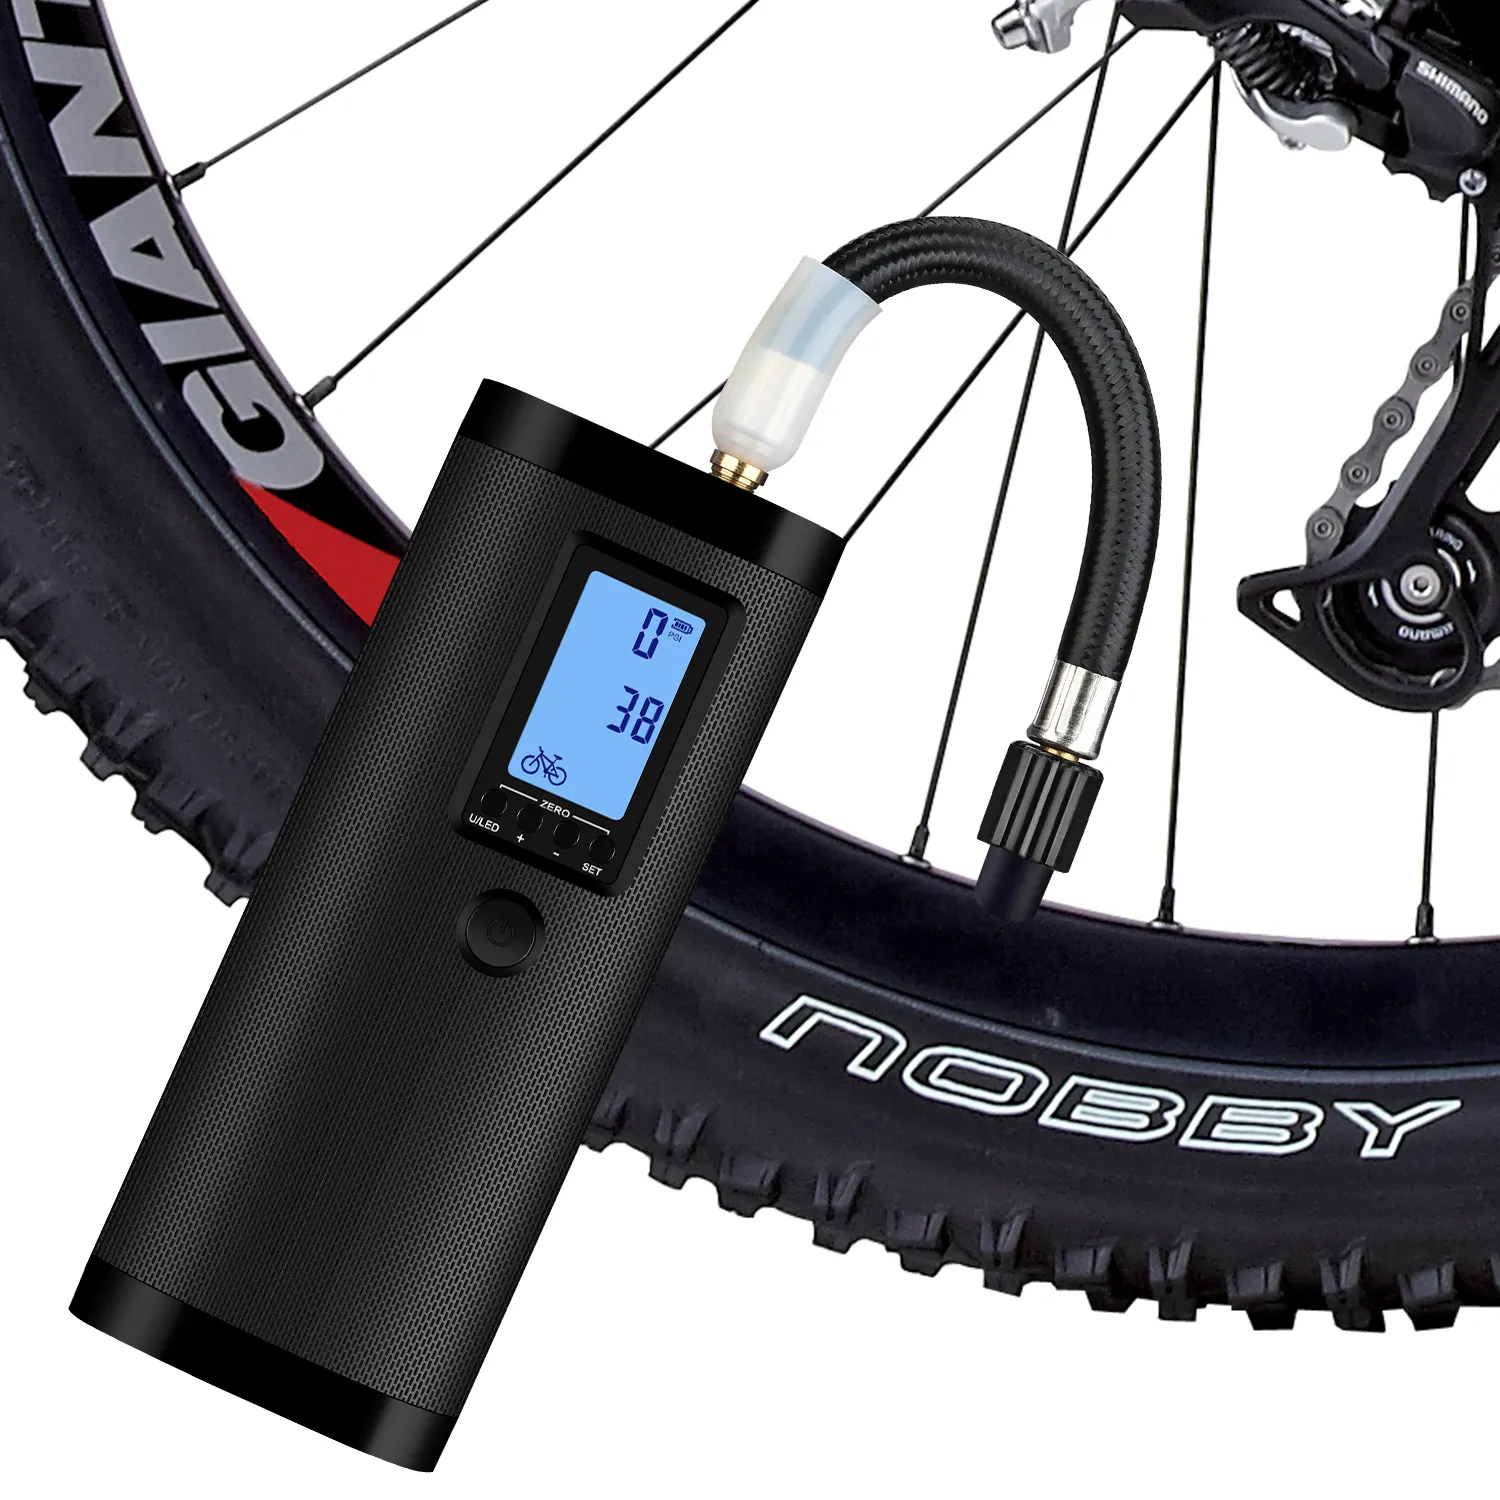 NEWO 디지털 휴대용 미니 펌프 자전거 휴대용 자전거 펌프 디지털 팽창기 공기 펌프